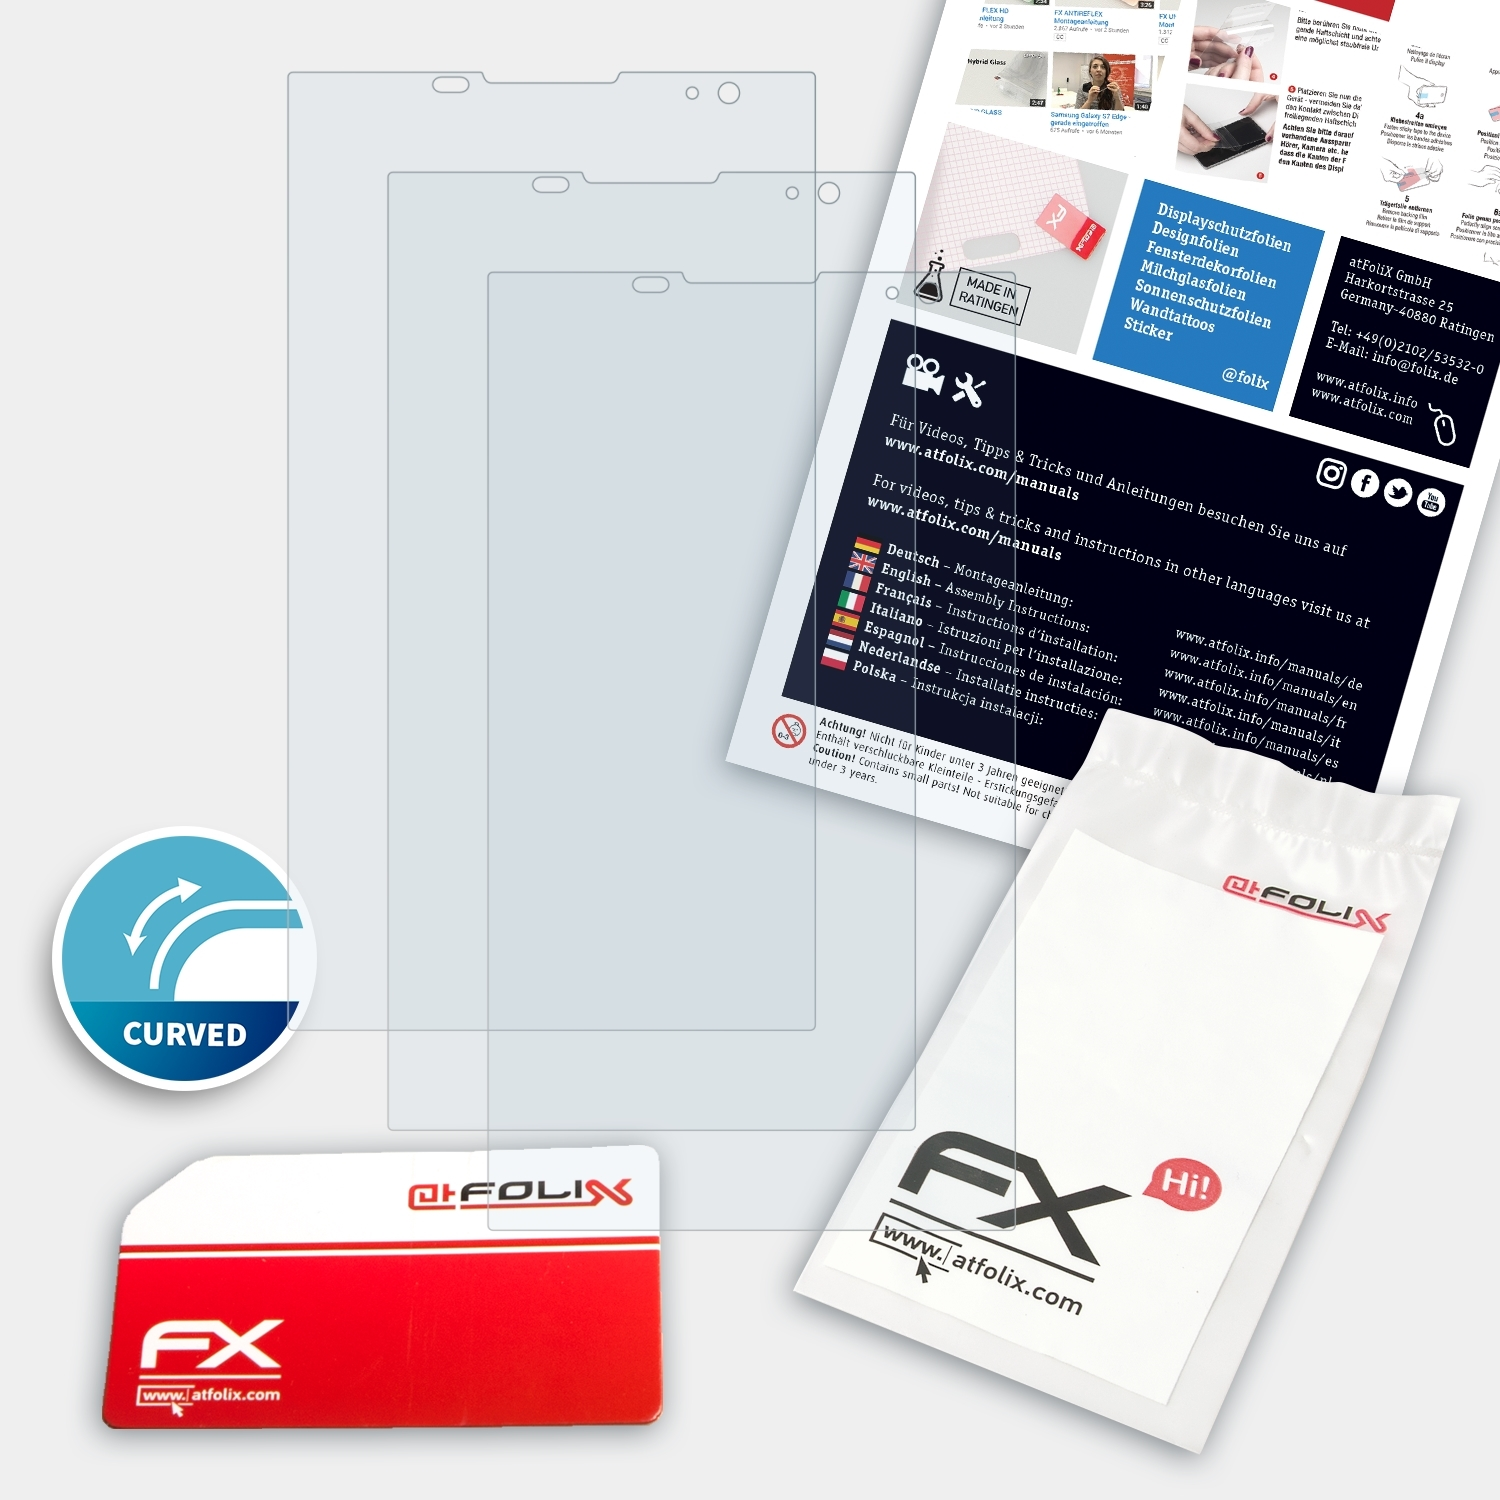 FX-ActiFleX 3x Blackberry Displayschutz(für Priv) ATFOLIX